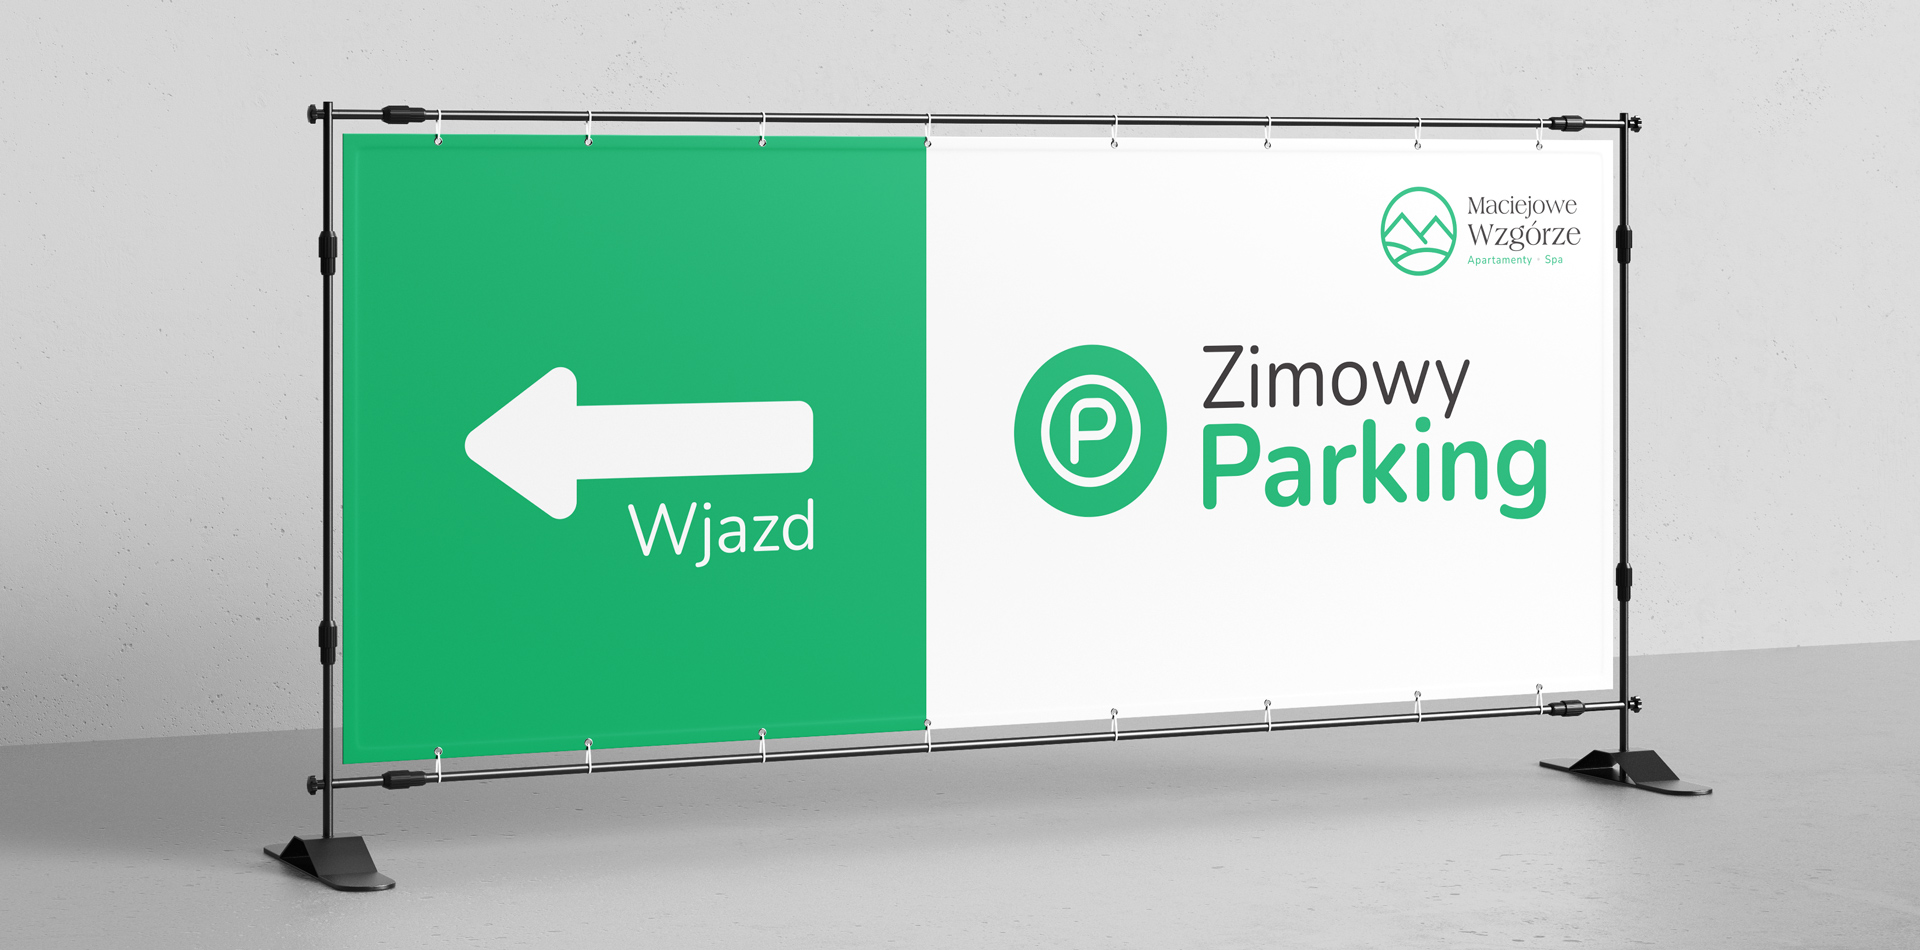 Maciejowe Wzgórze - Parkplatz - Banner